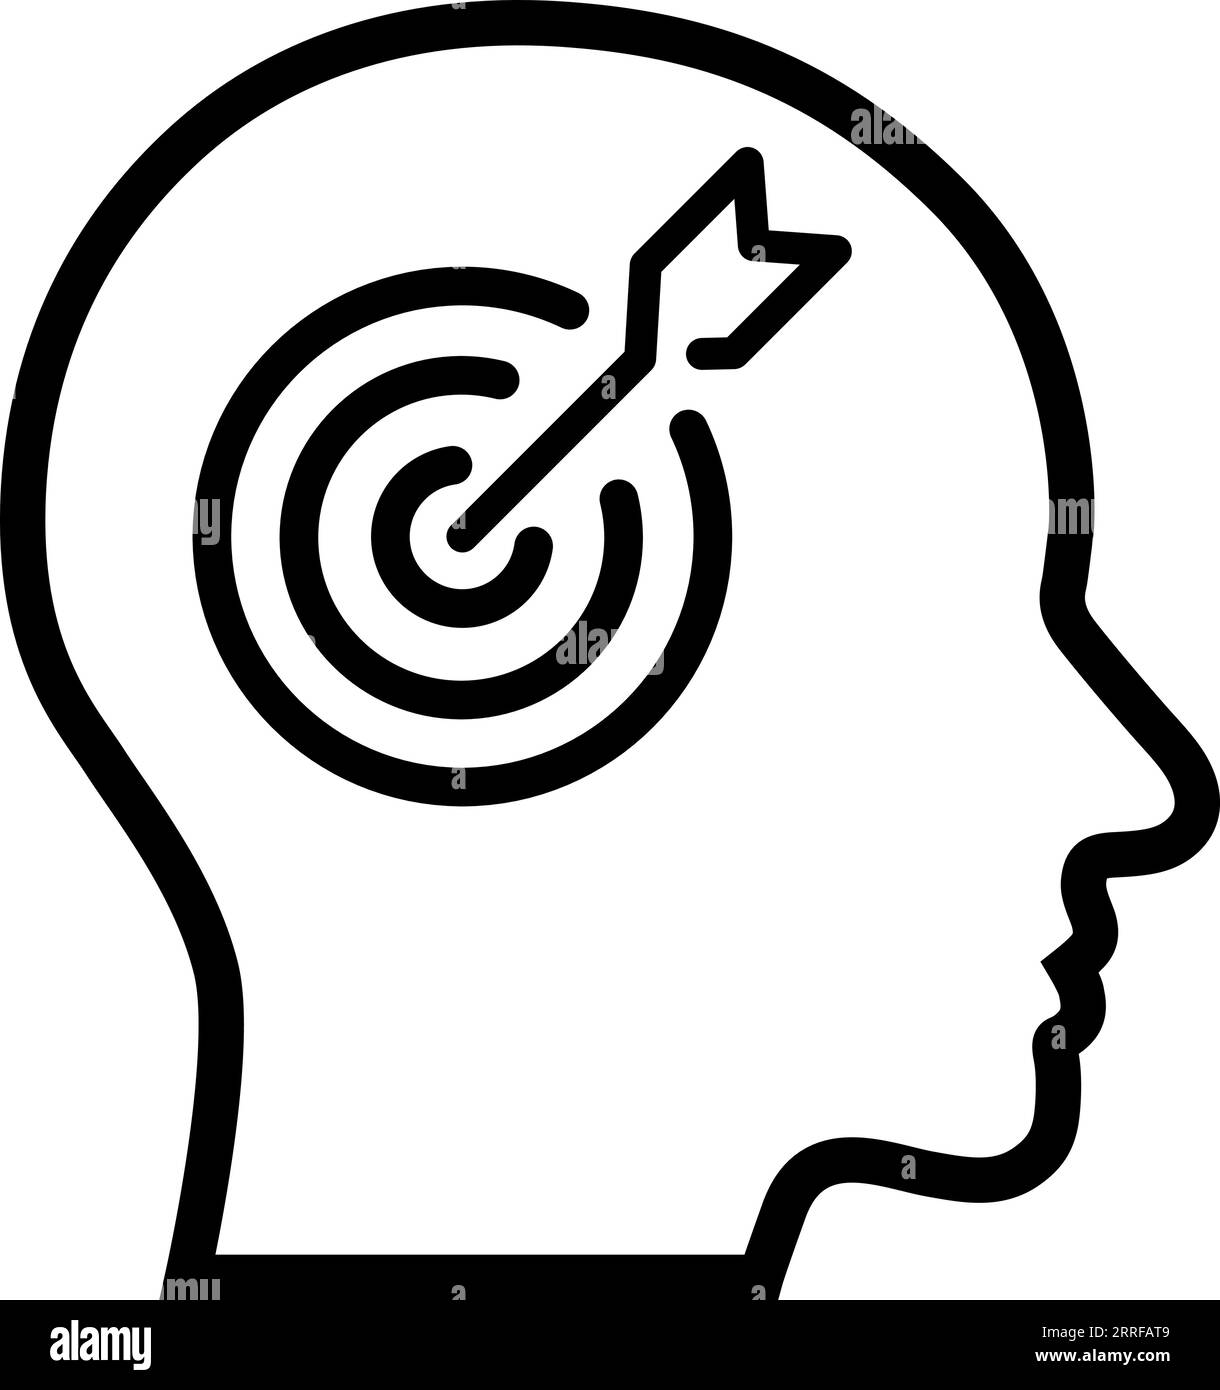 Icona di linea di freccette bersaglio nella testa umana come concetto di messa a fuoco, obiettivo o percezione Illustrazione Vettoriale